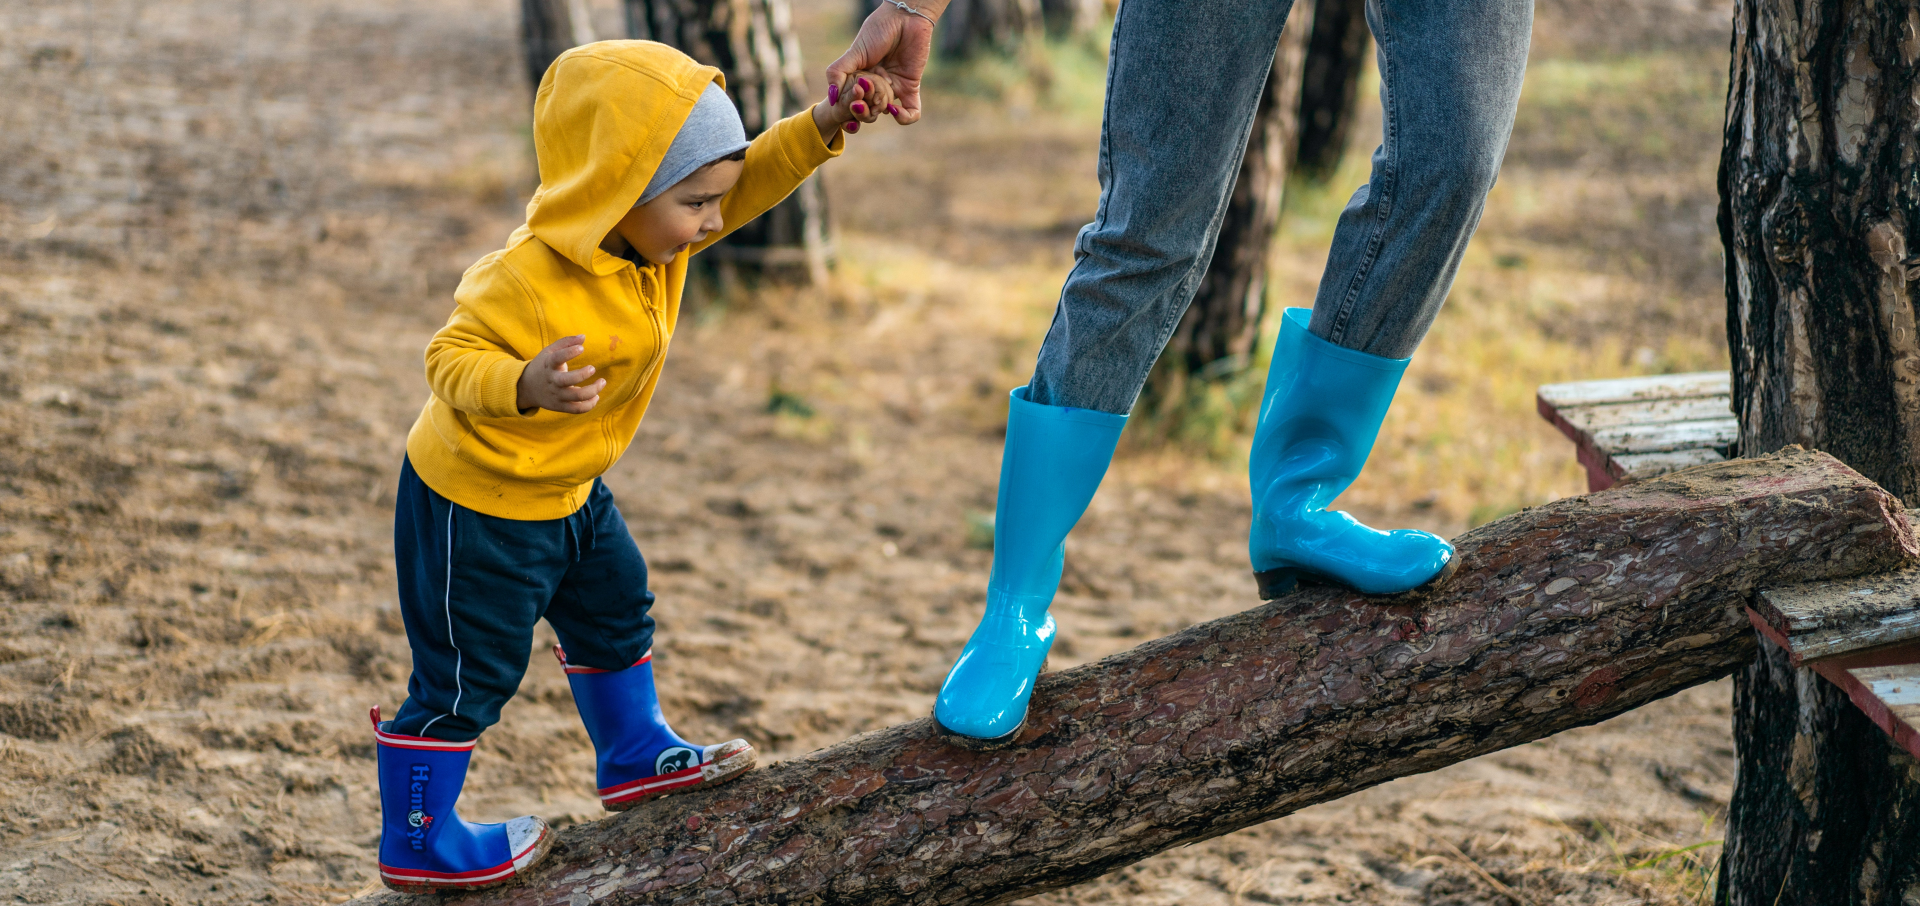 Lapsi kävelee värikkäissä sadevaatteissa kumisaappaat jalassa puunrungon päällä ja aikuinen pitää häntä kädestä kiinni.